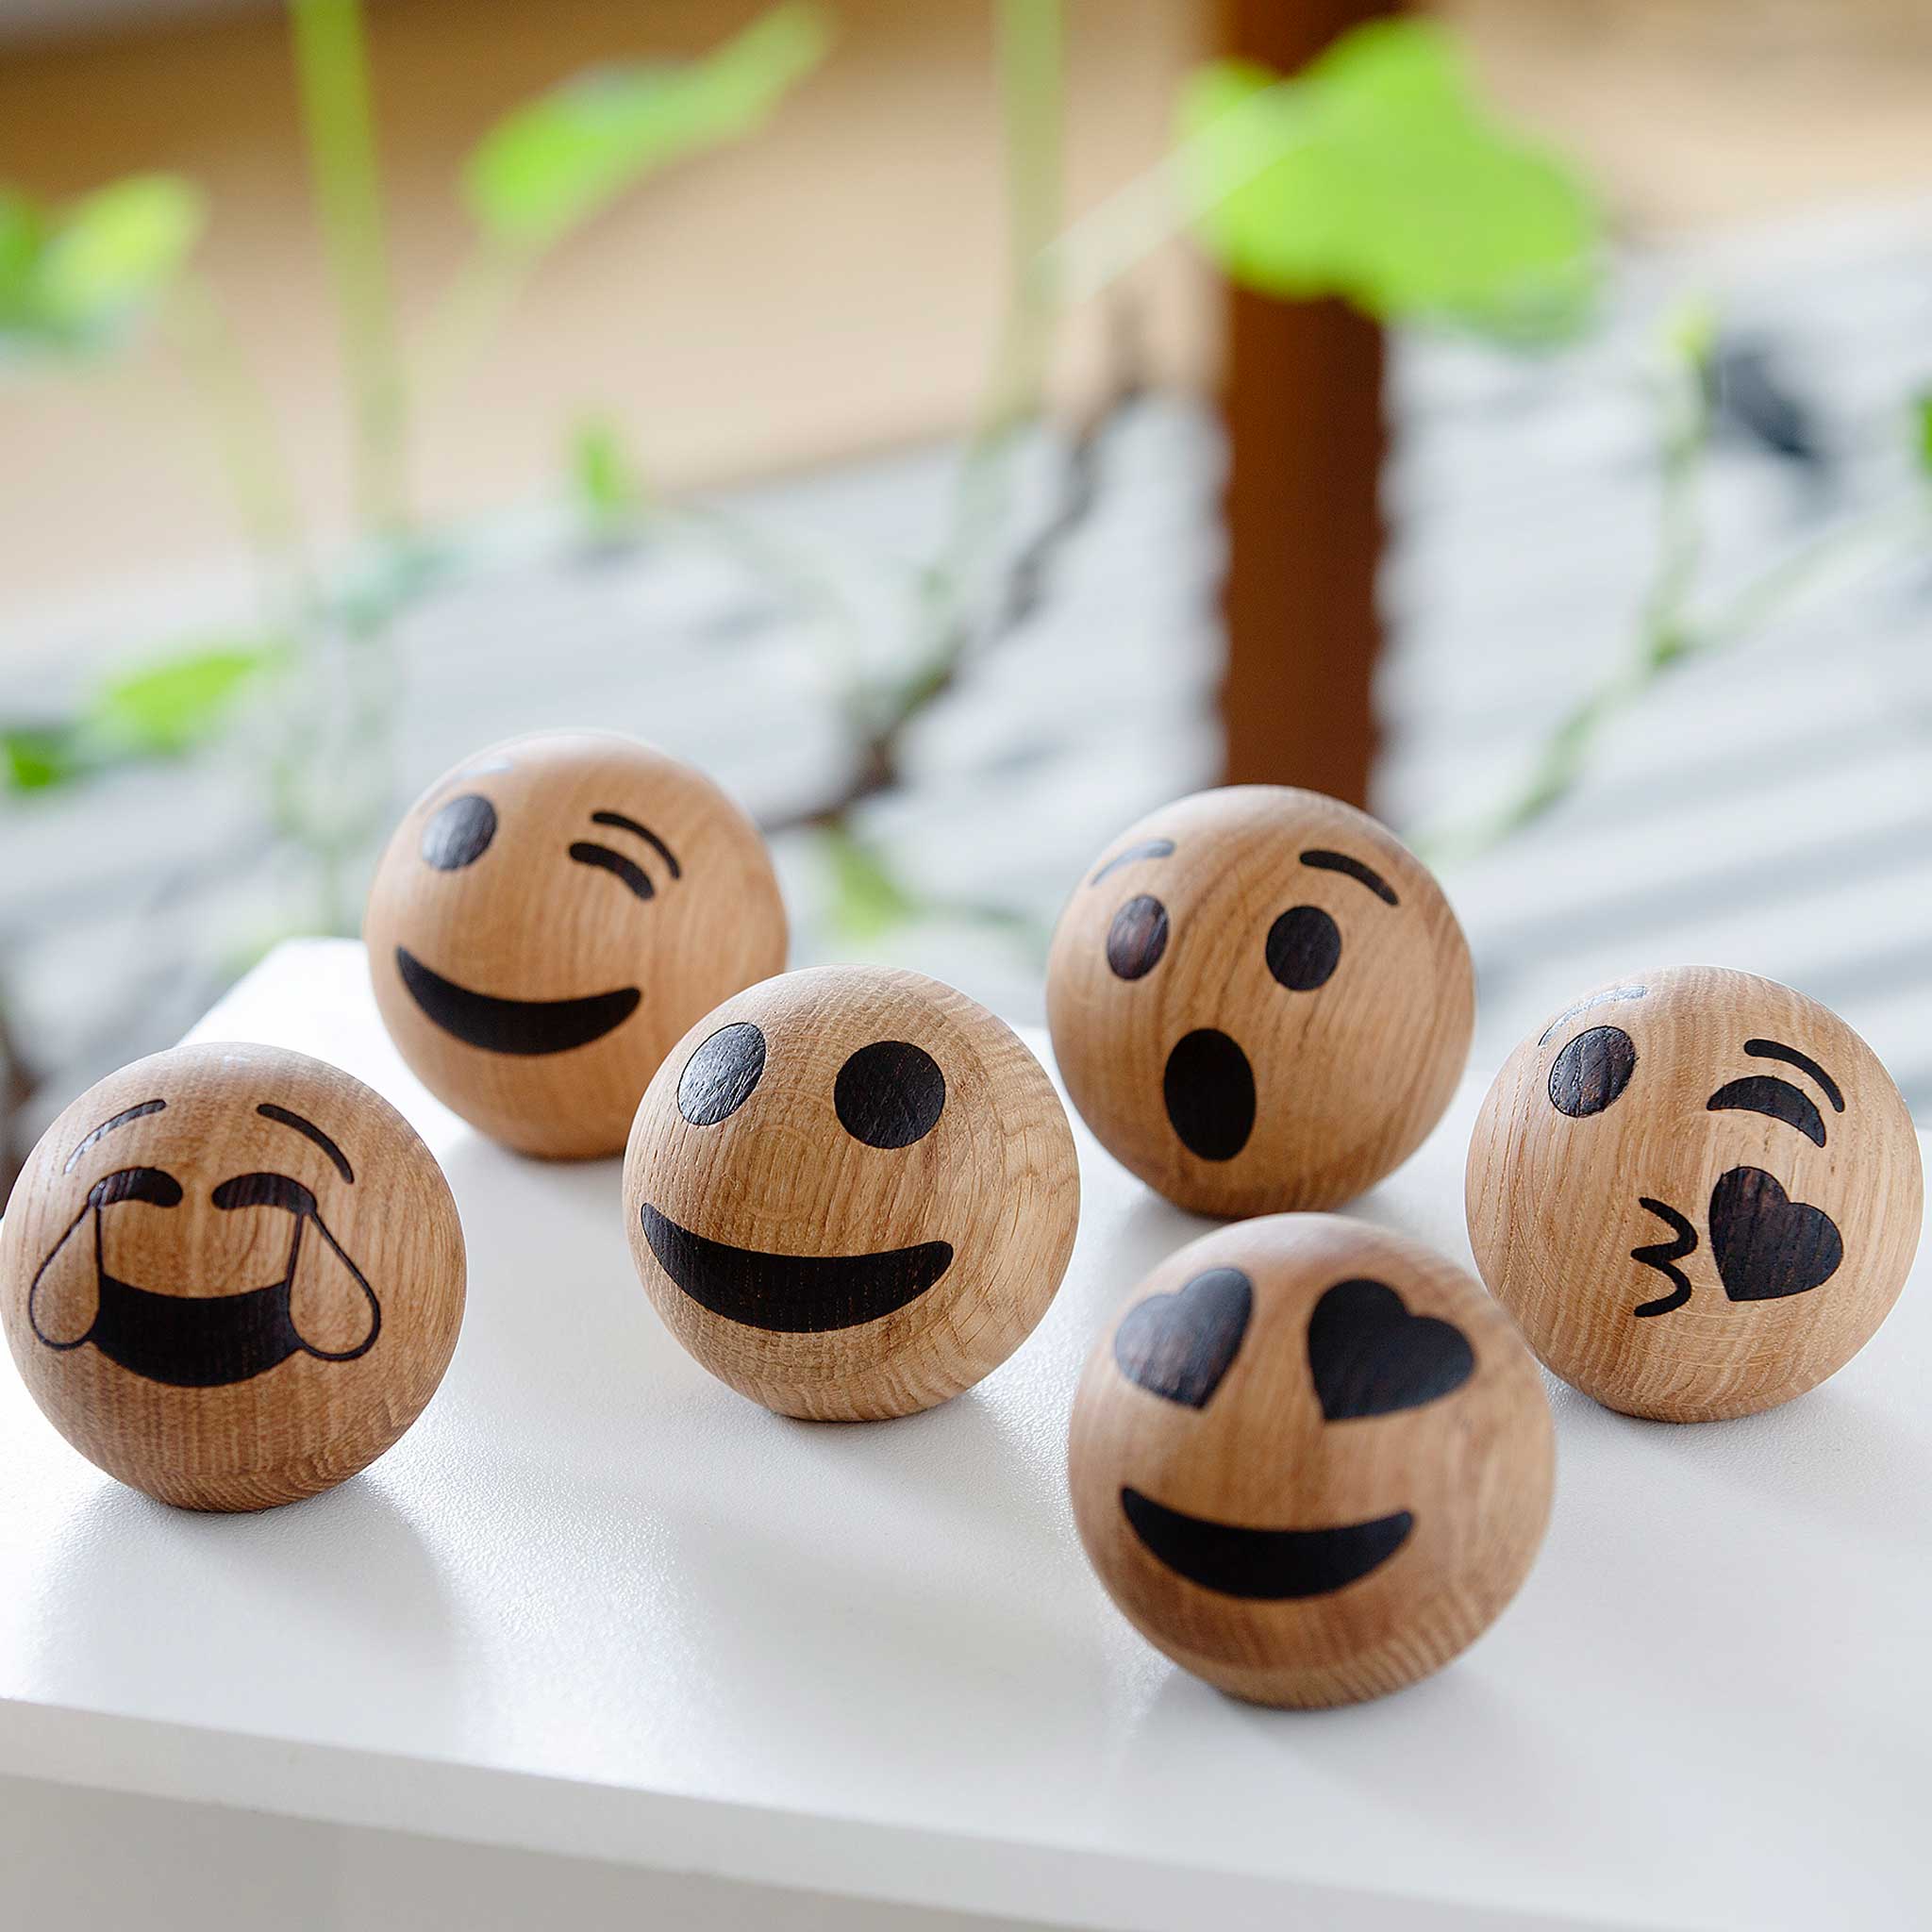 SPRING EMOTIONS | lächelndes Gesicht mit herzförmigen Augen | Holz EMOTICONS | mencke&vagnby | Spring Copenhagen - Charles & Marie